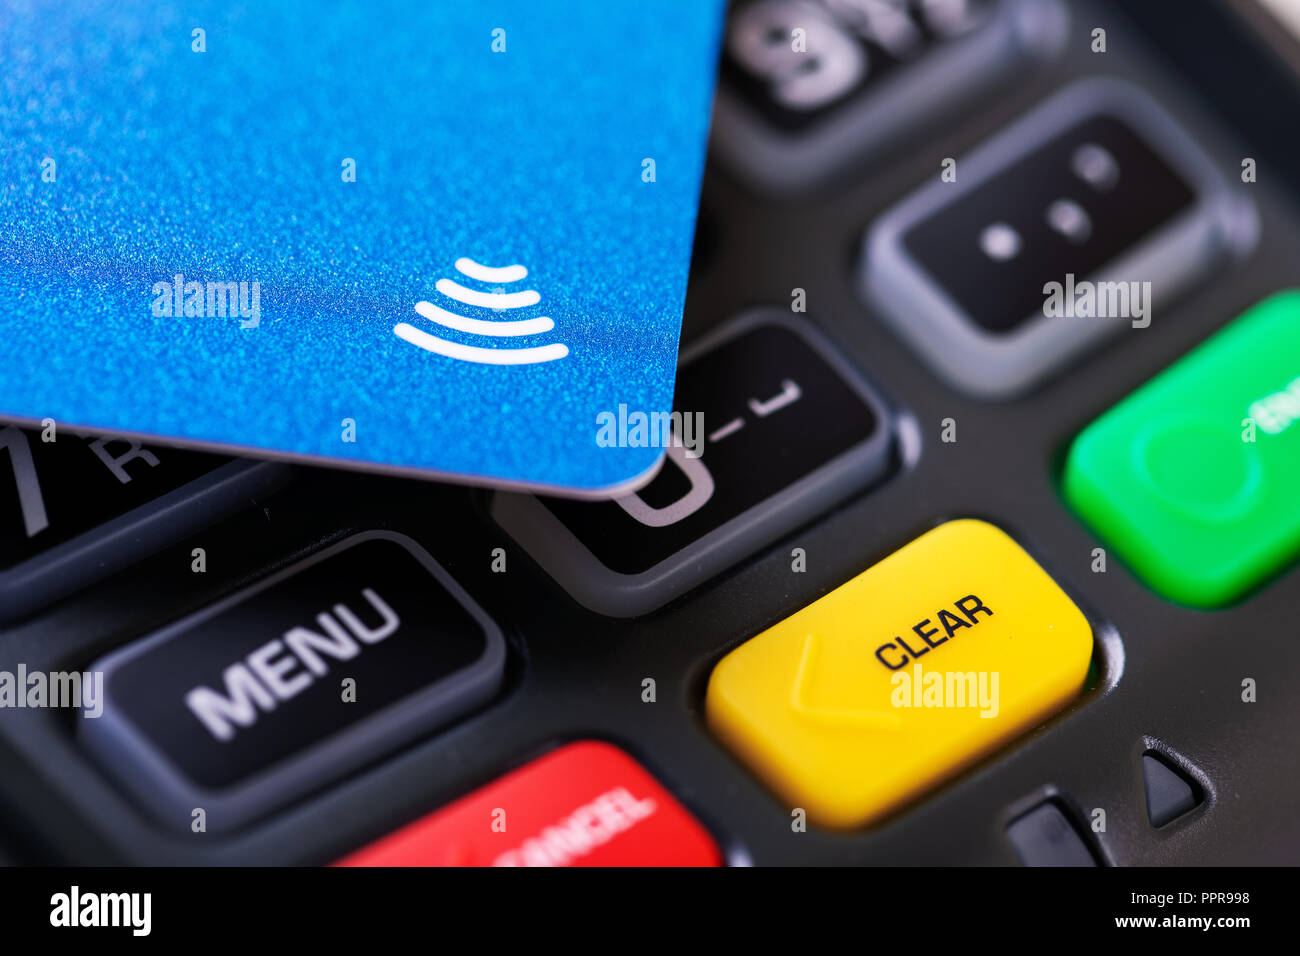 Le paiement sans contact NFC - terminal de transaction de carte de crédit Banque D'Images